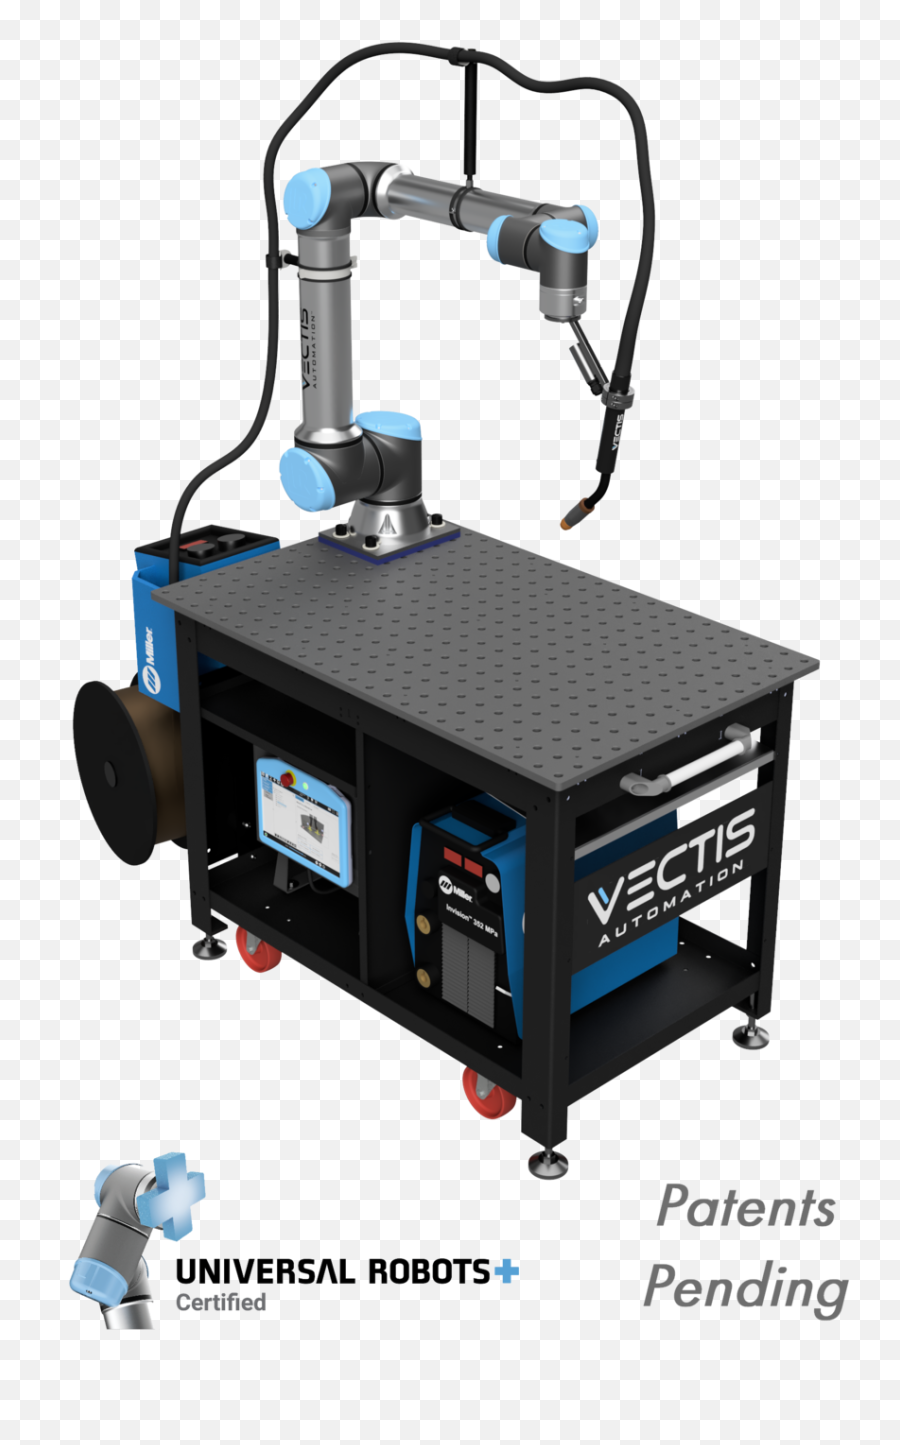 Vectis Automation - Vectis Welding Robot Png,Welder Png